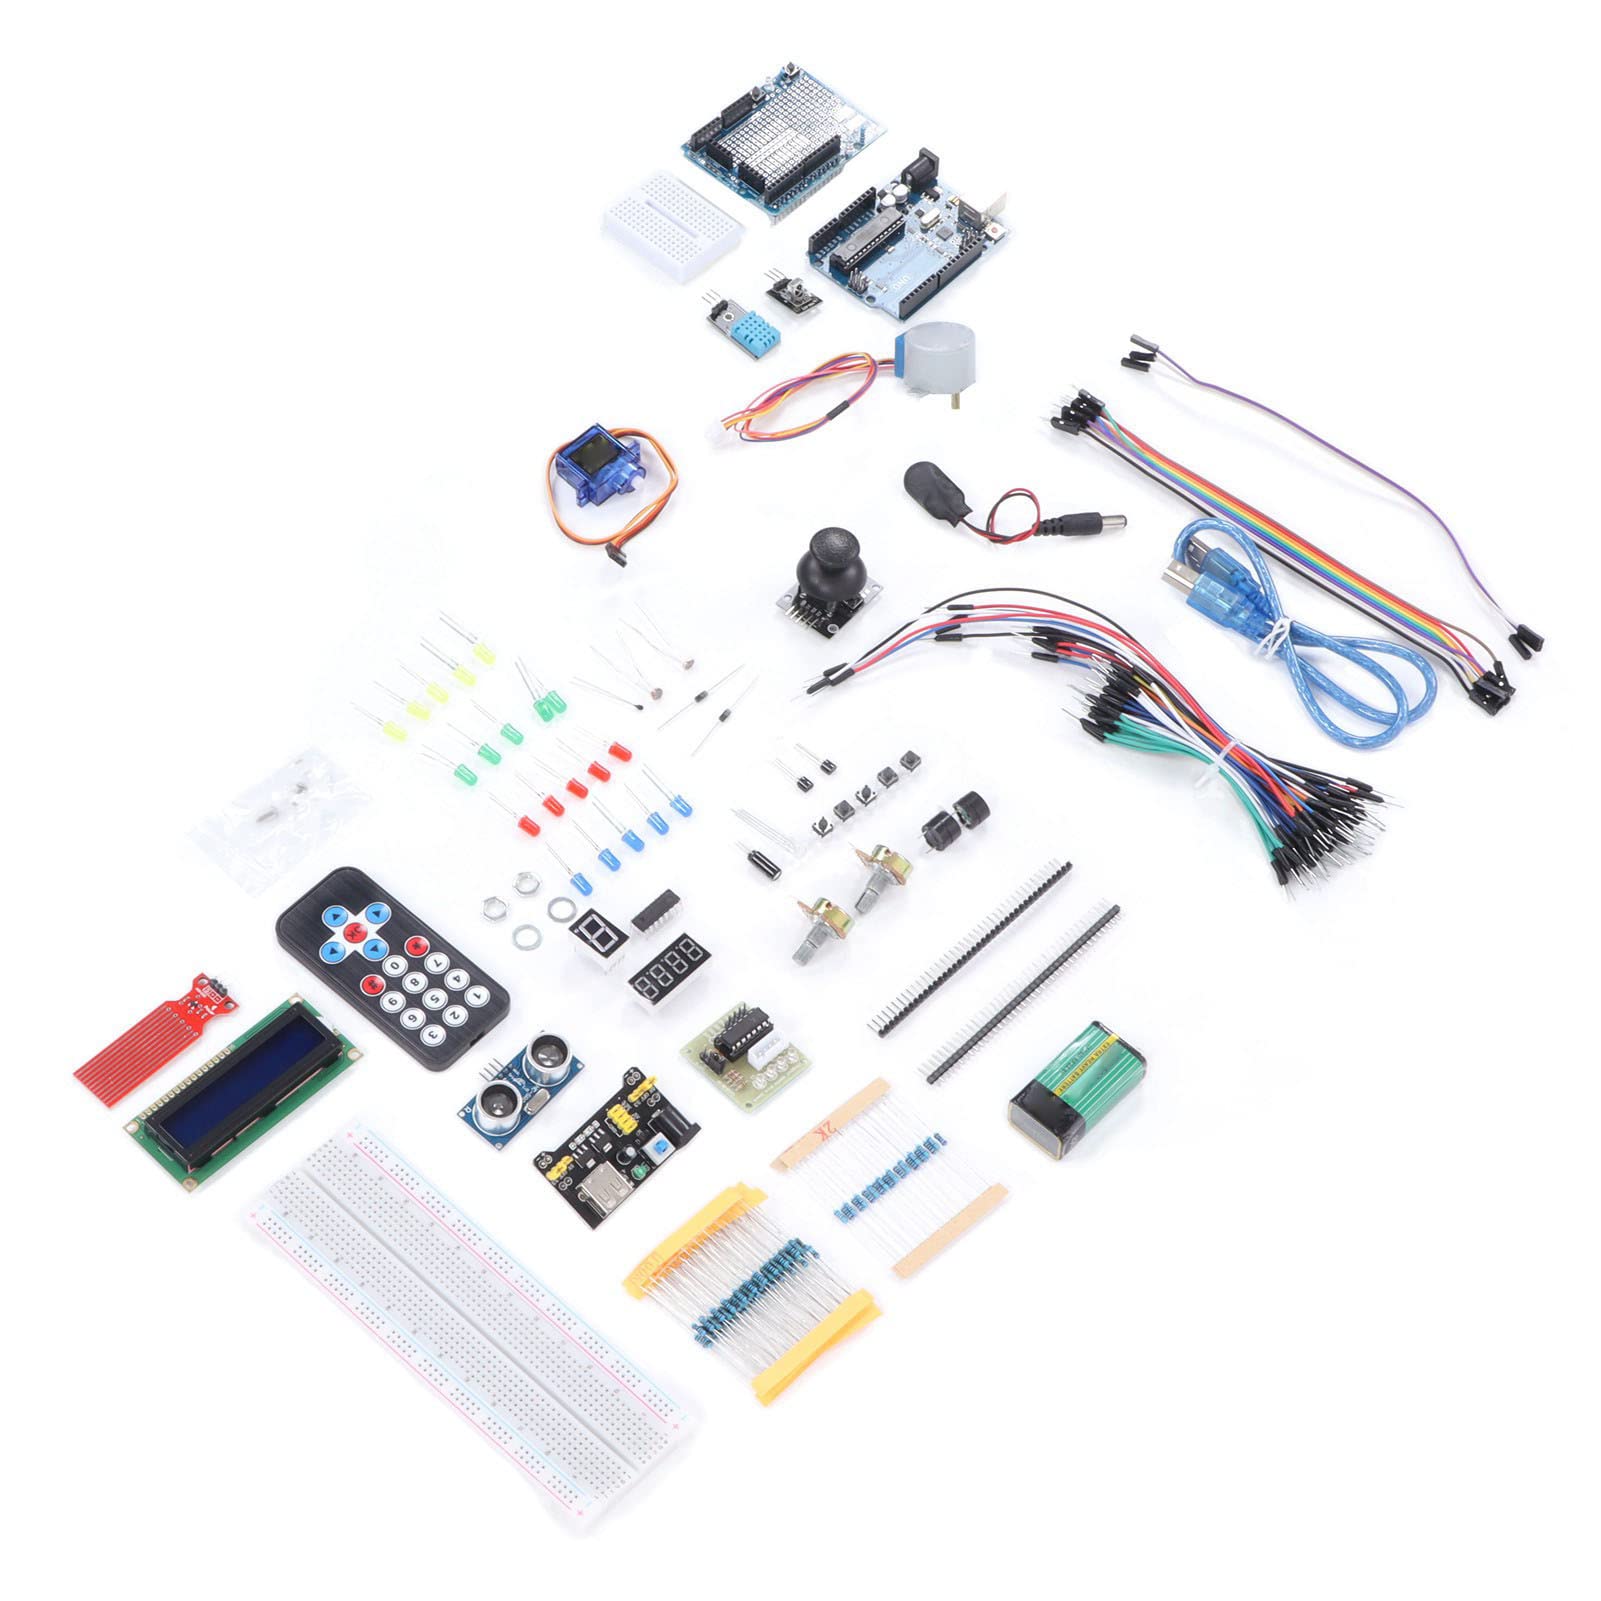 Weikeya Elektronisches Komponenten-Set, einfach zu bedienender Ersatzwiderstand, Multi-Spezifikation, Super-Starter-Kit, eingebaute Batterie für Anfänger zum Programmieren